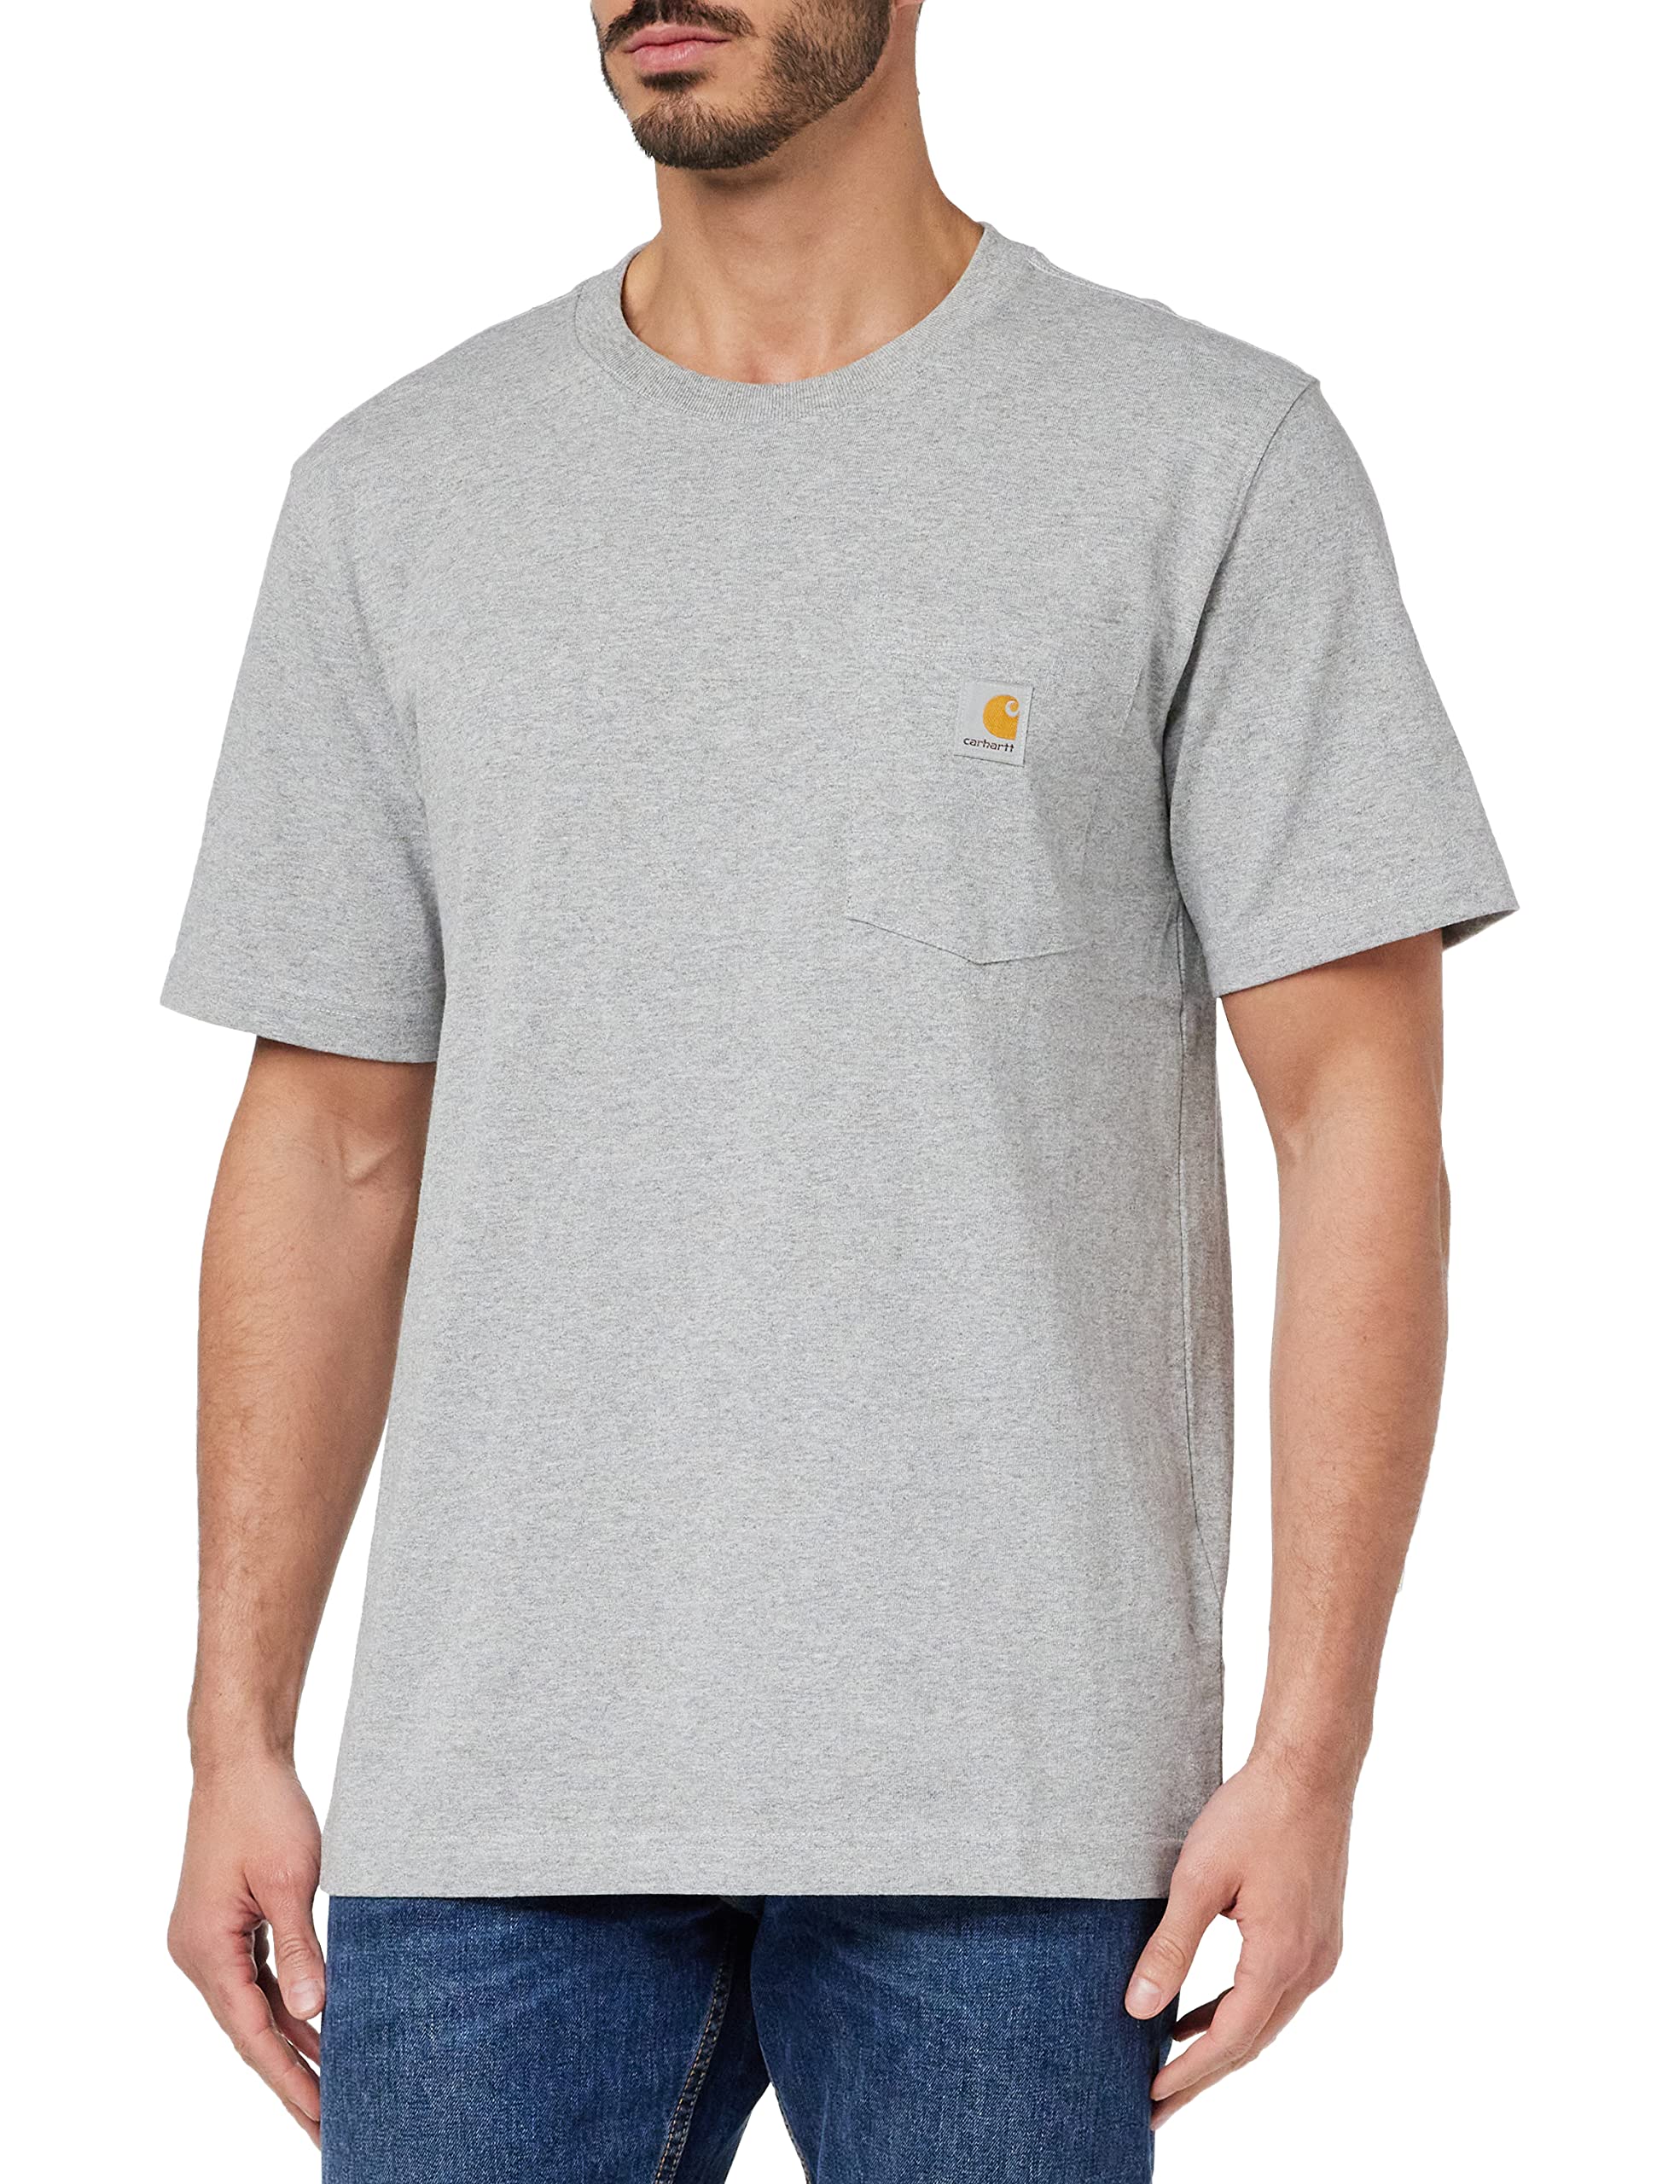 Carhartt Men's Relaxed Fit Heavyweight Short-Sleeve Pocket T-Shirt